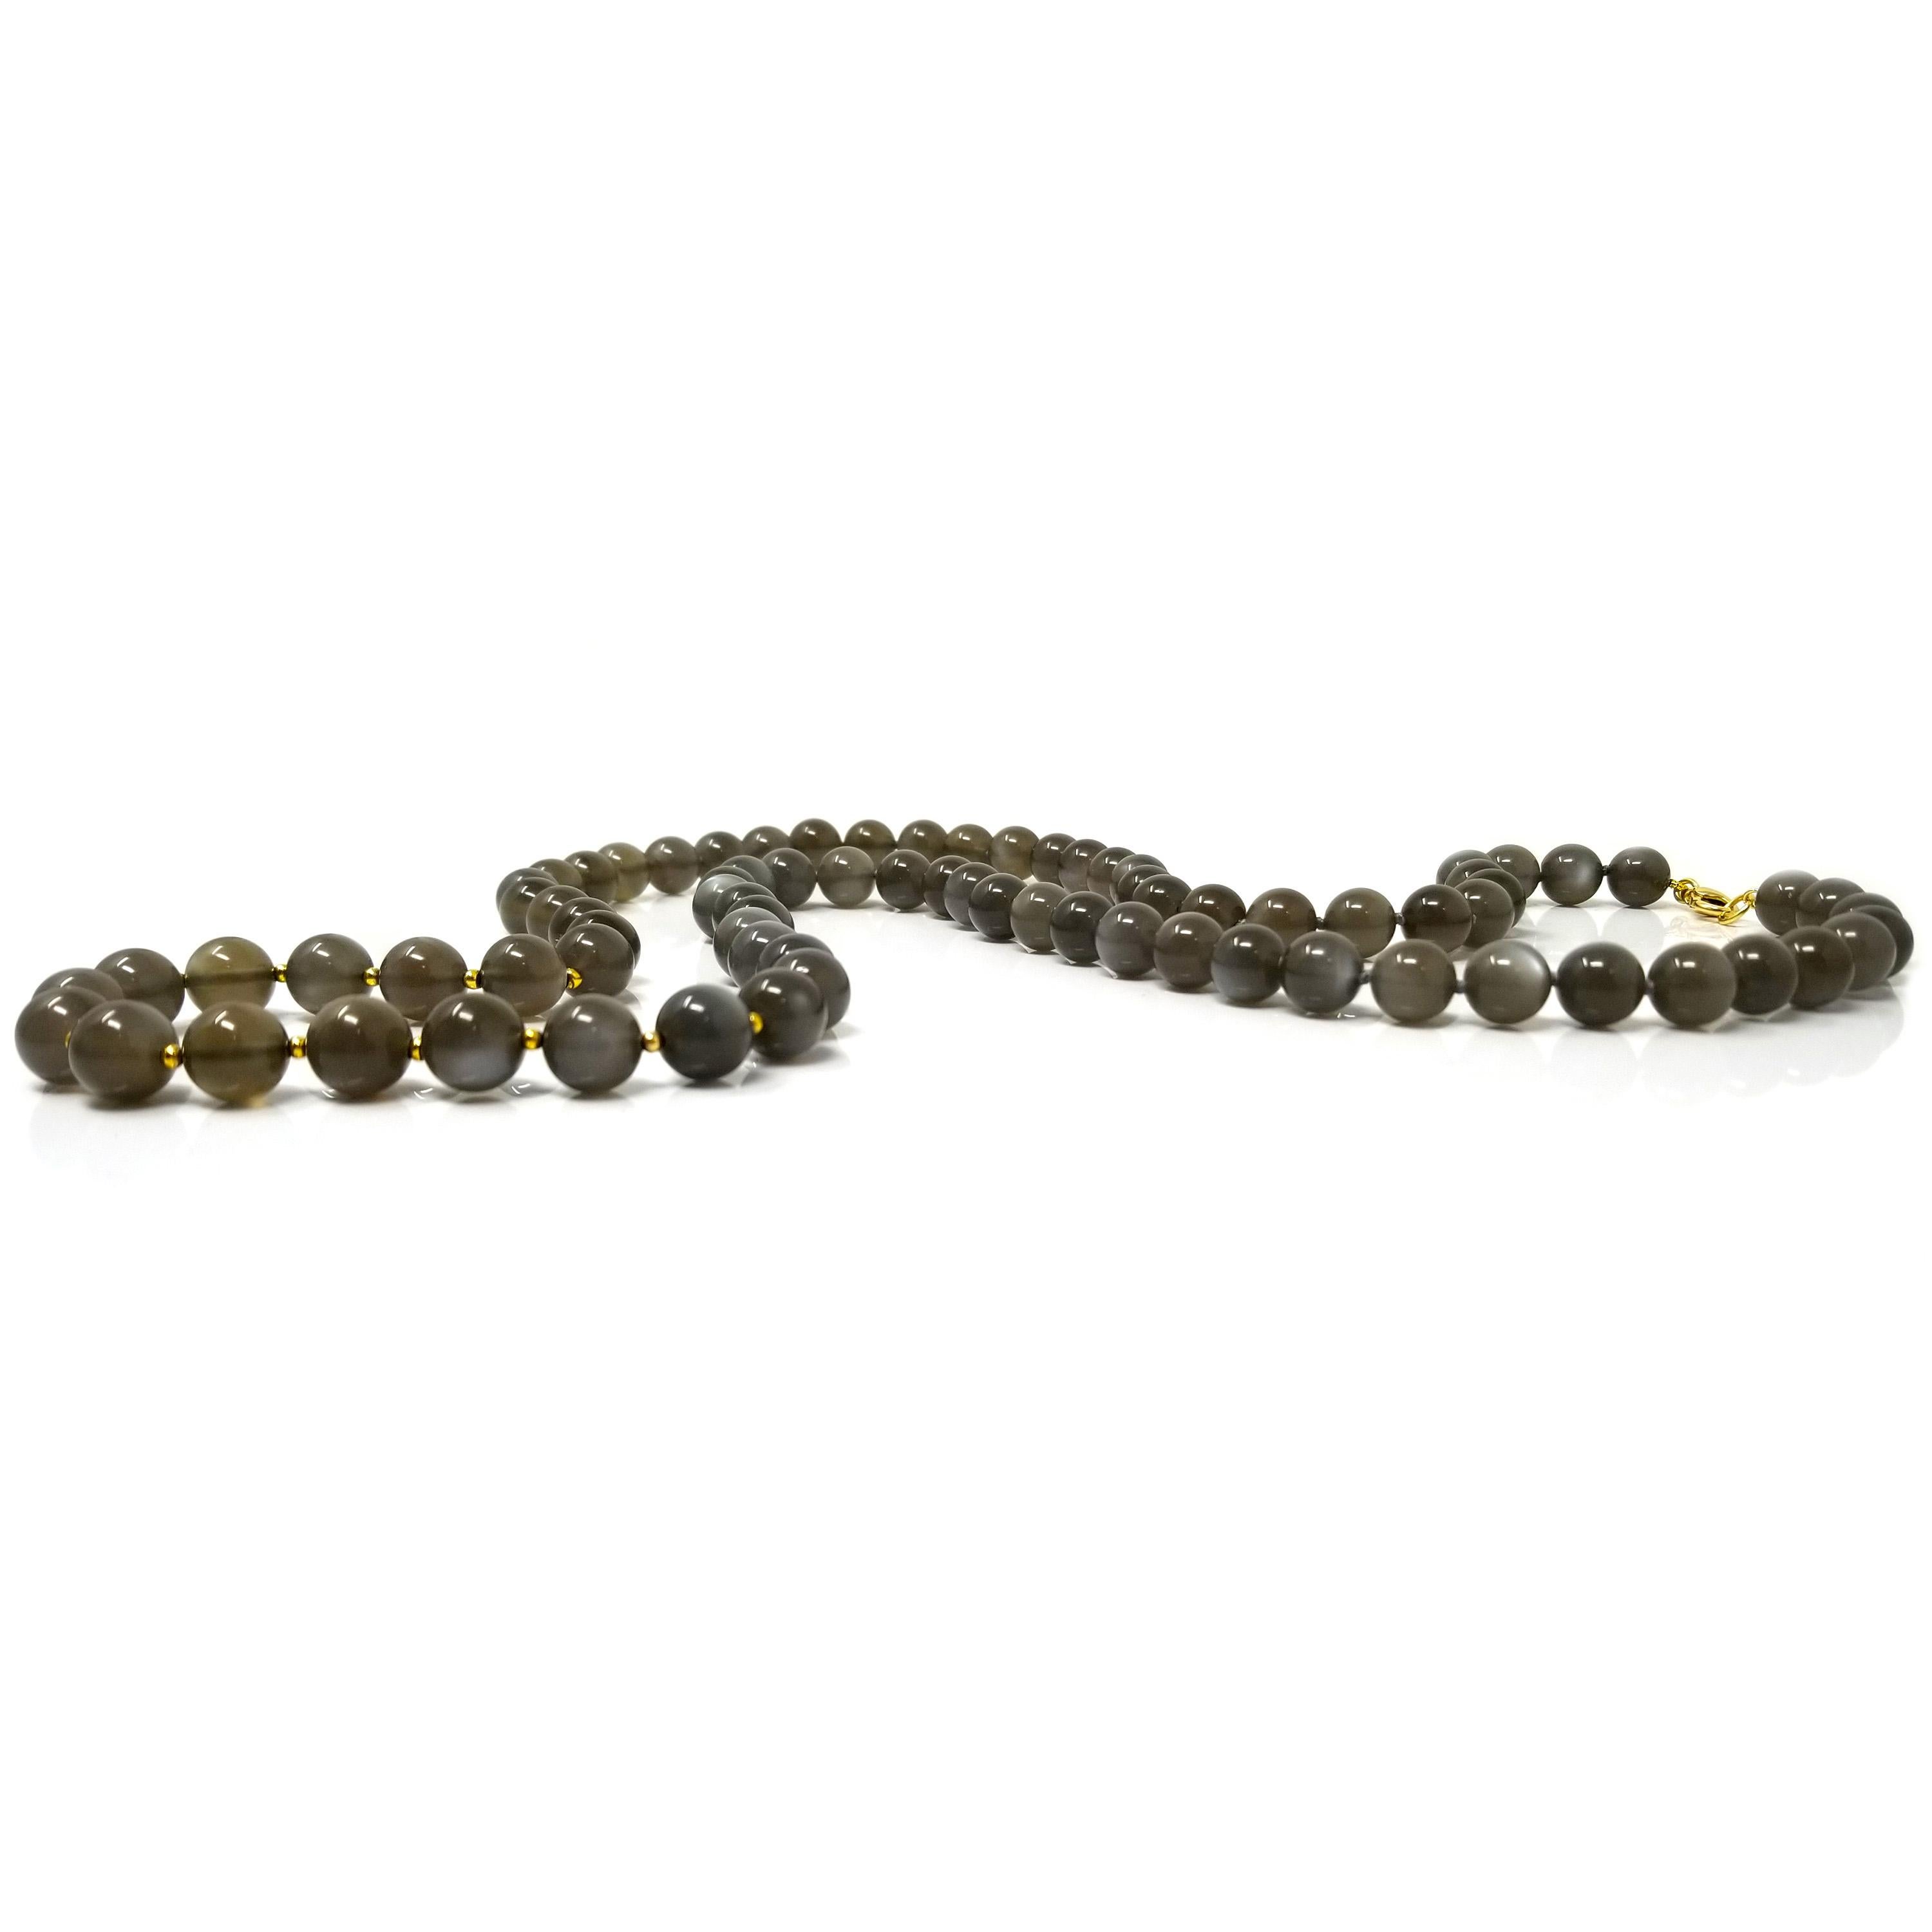 Perlenhalsketten aus schönen Edelsteinen sind eine einfache Möglichkeit, ein Outfit aufzuwerten. Diese ätherischen Mondsteine haben eine satte taupegraue Farbe und eine bezaubernde Adulareszenz. 

Einige zarte 18-karätige Akzente verleihen der Kette